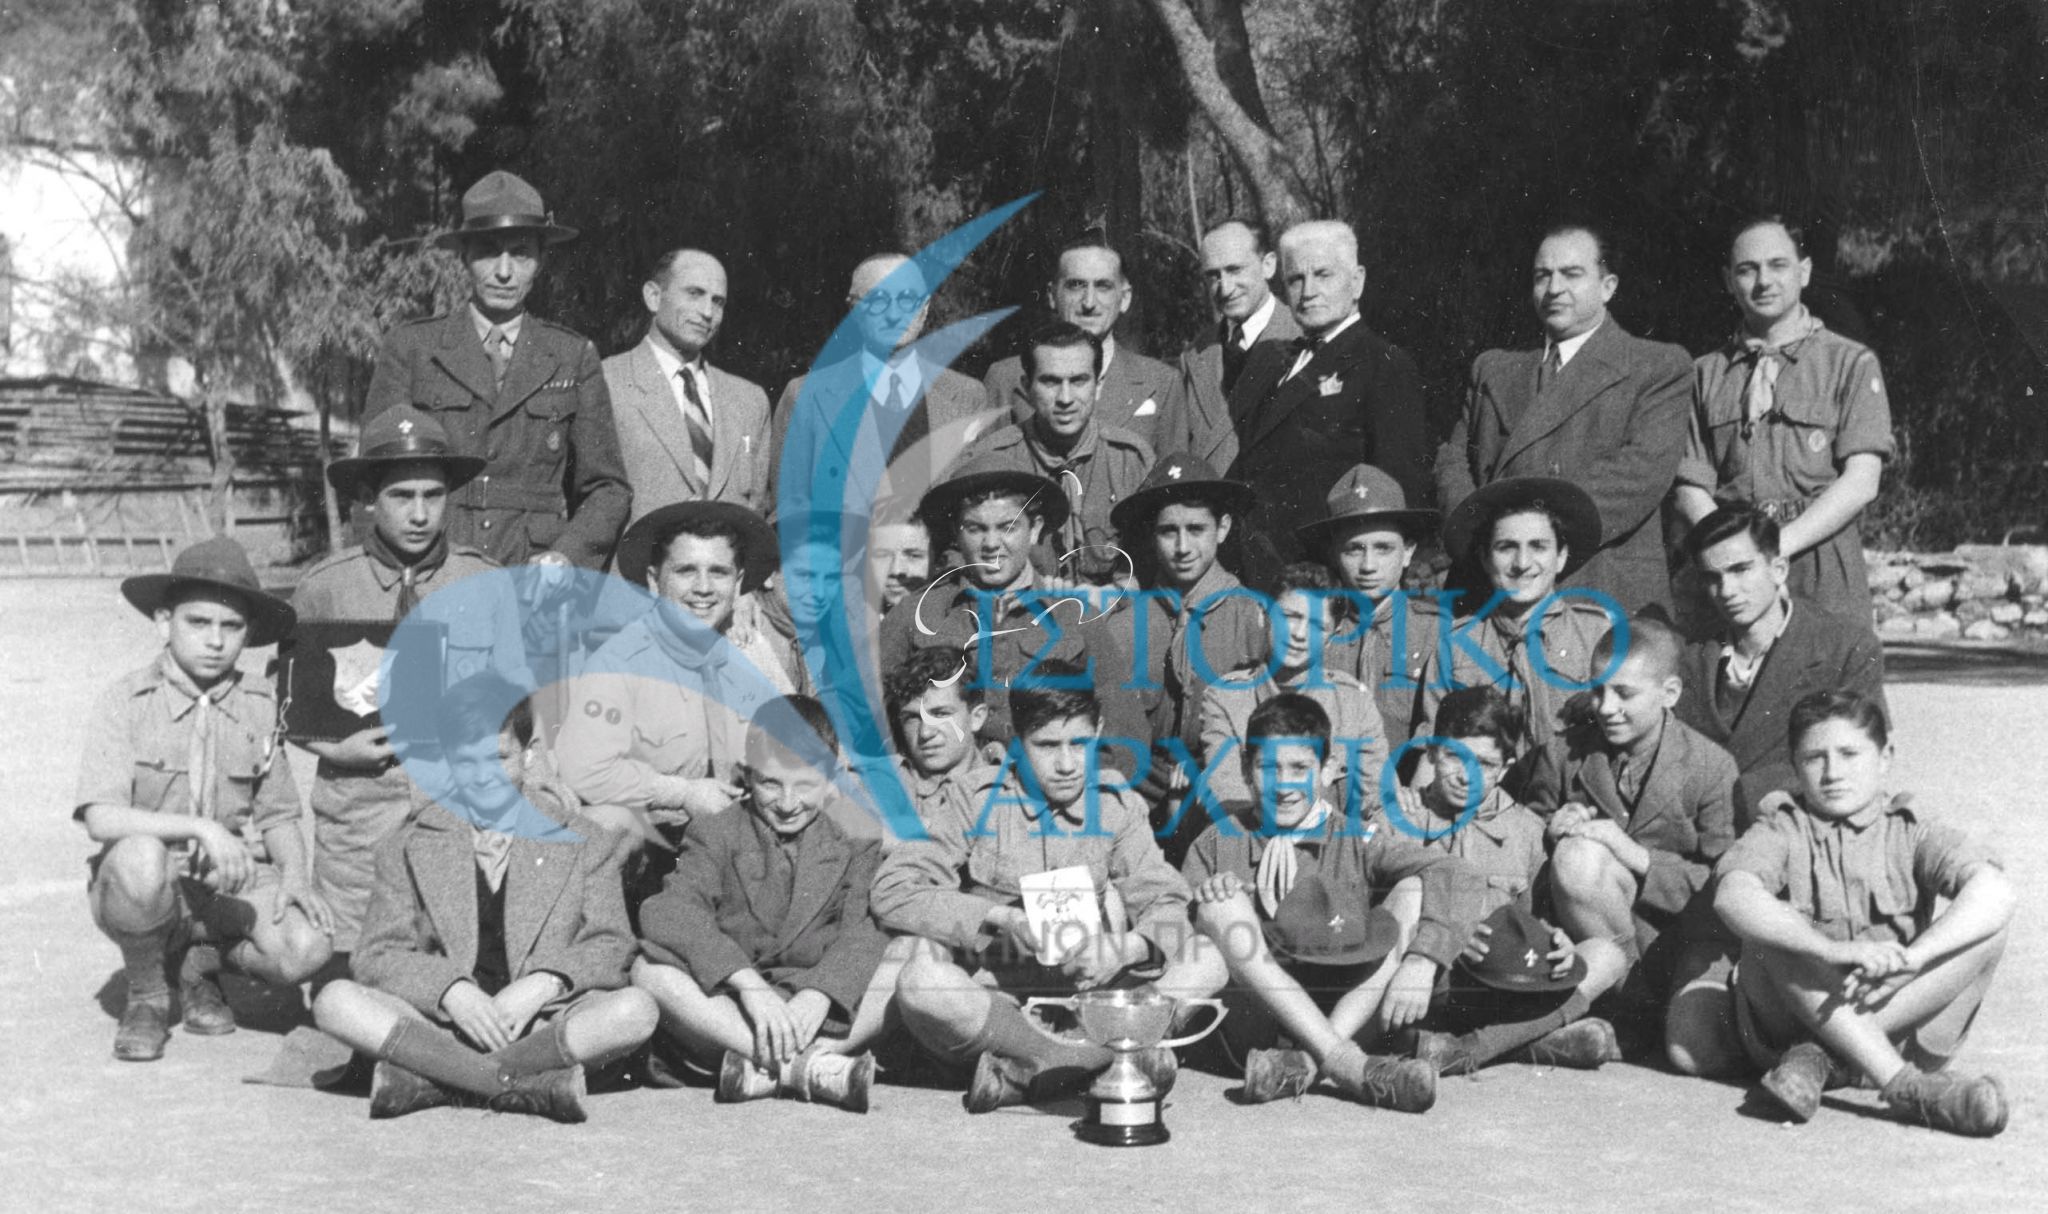 Ο Η. Ησαίας με προσκόπους της 17ης Ακροπόλεως Αθηνών μετά την απονομή επάθλων σε αθλητικούς αγώνες το 1948.